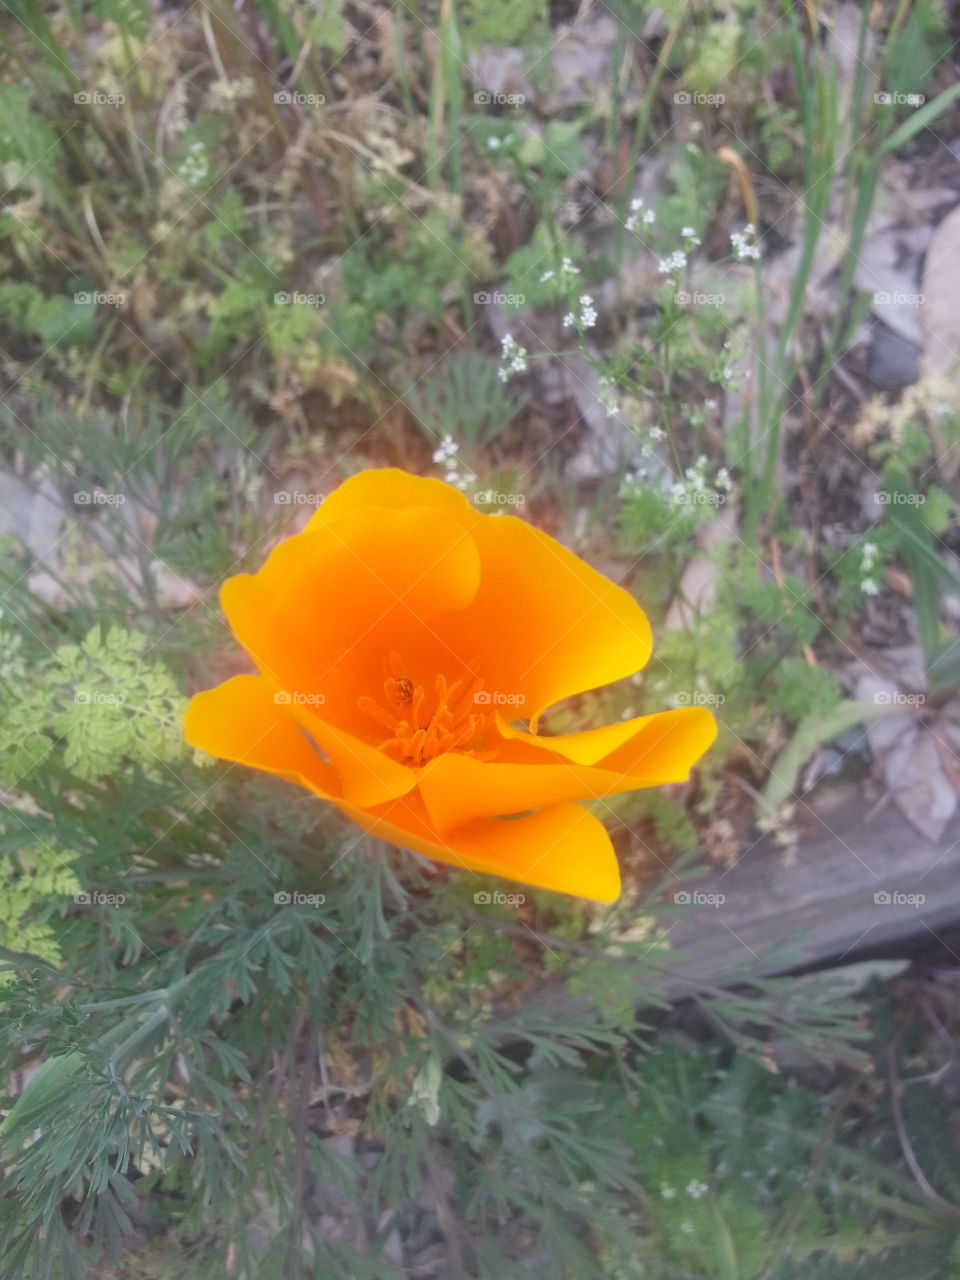 poppy. taken in California